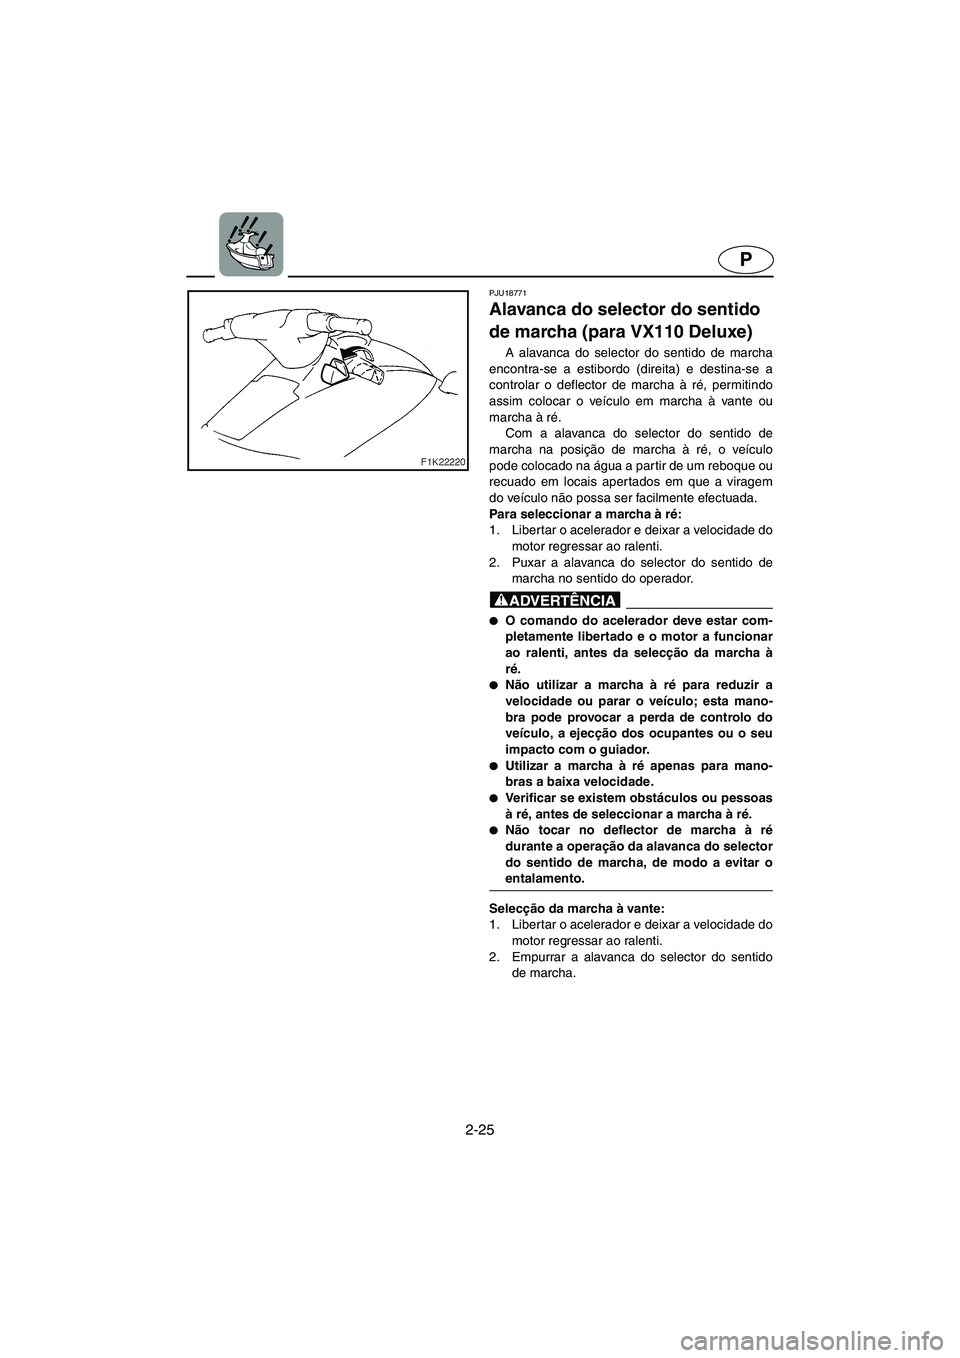 YAMAHA VX 2006  Manual de utilização (in Portuguese) 2-25
P
PJU18771
Alavanca do selector do sentido 
de marcha (para VX110 Deluxe) 
A alavanca do selector do sentido de marcha
encontra-se a estibordo (direita) e destina-se a
controlar o deflector de ma